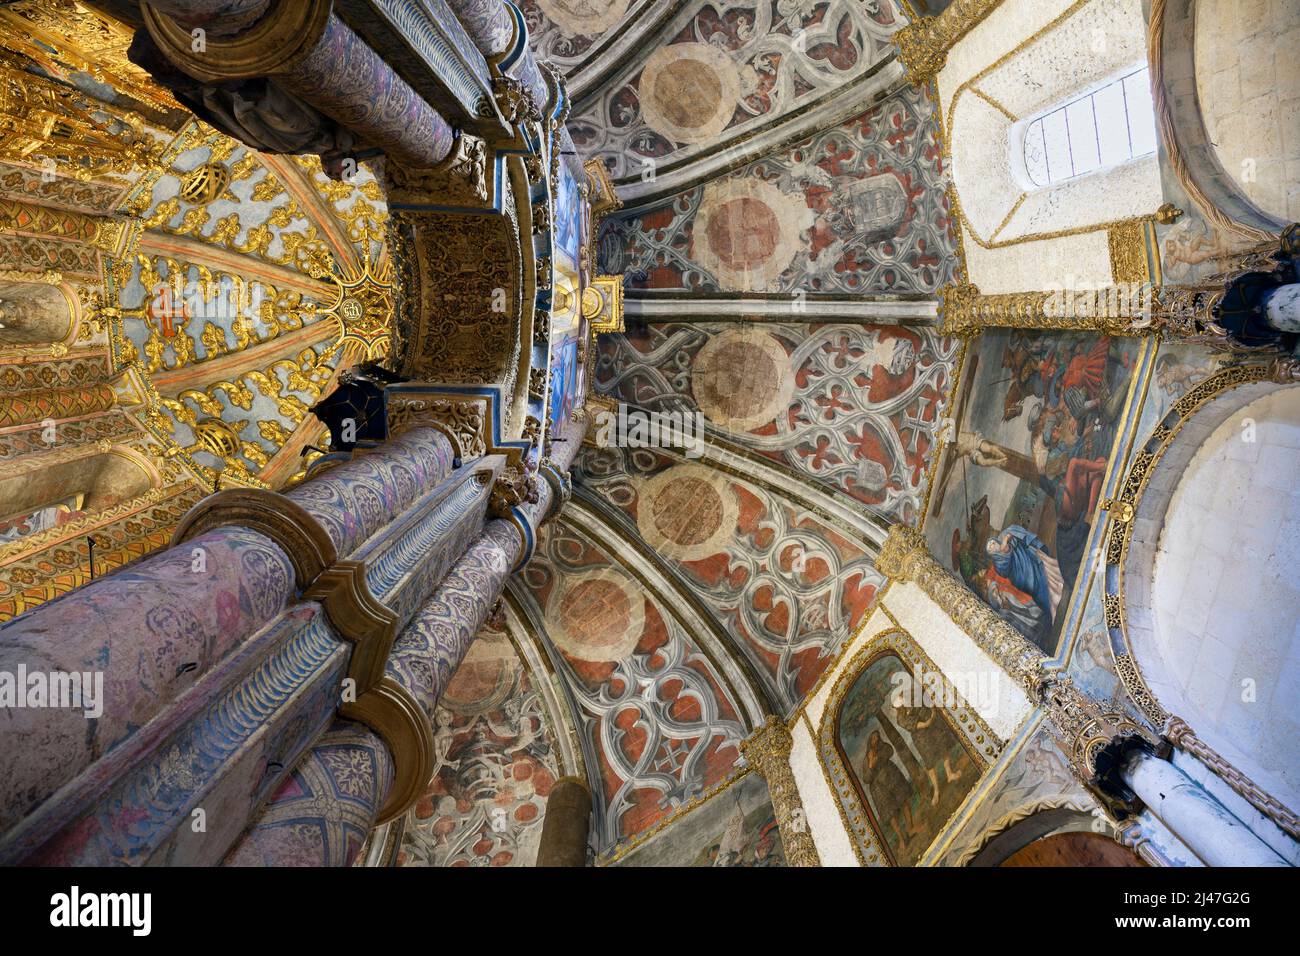 Europe, Portugal, Tomar, intérieur de l'église ronde du couvent du Christ (Convento de Cristo) montrant le plafond peint de style gothique tardif Banque D'Images